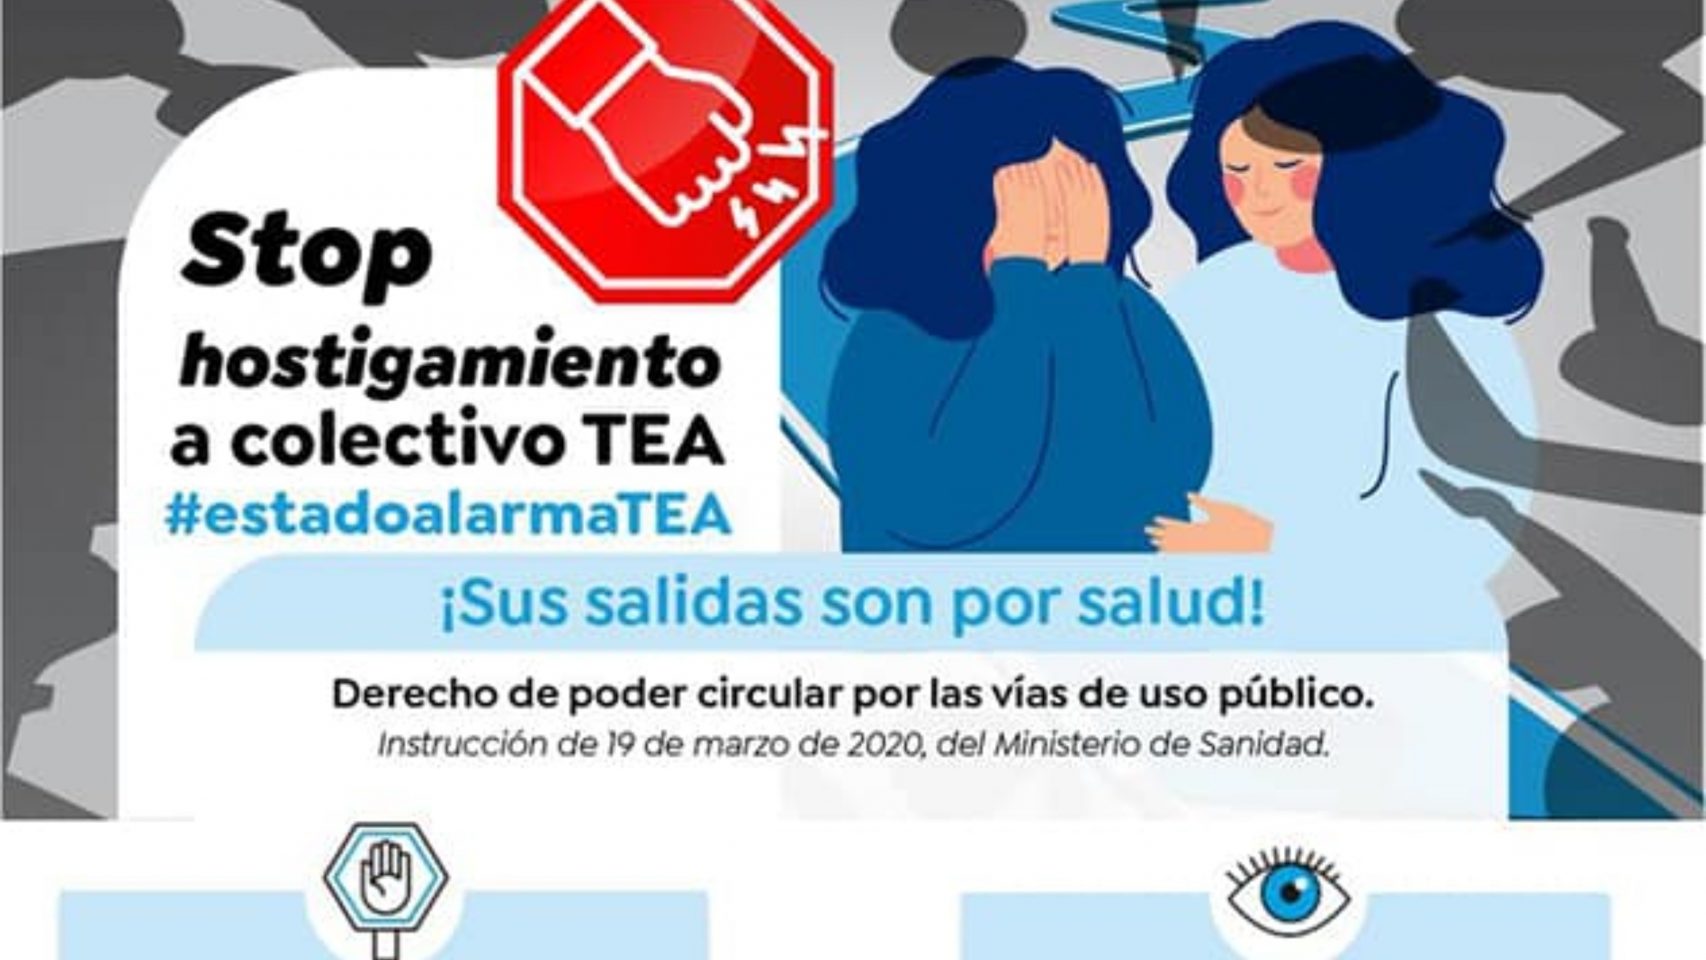 Campaña en defensa del colectico TEA